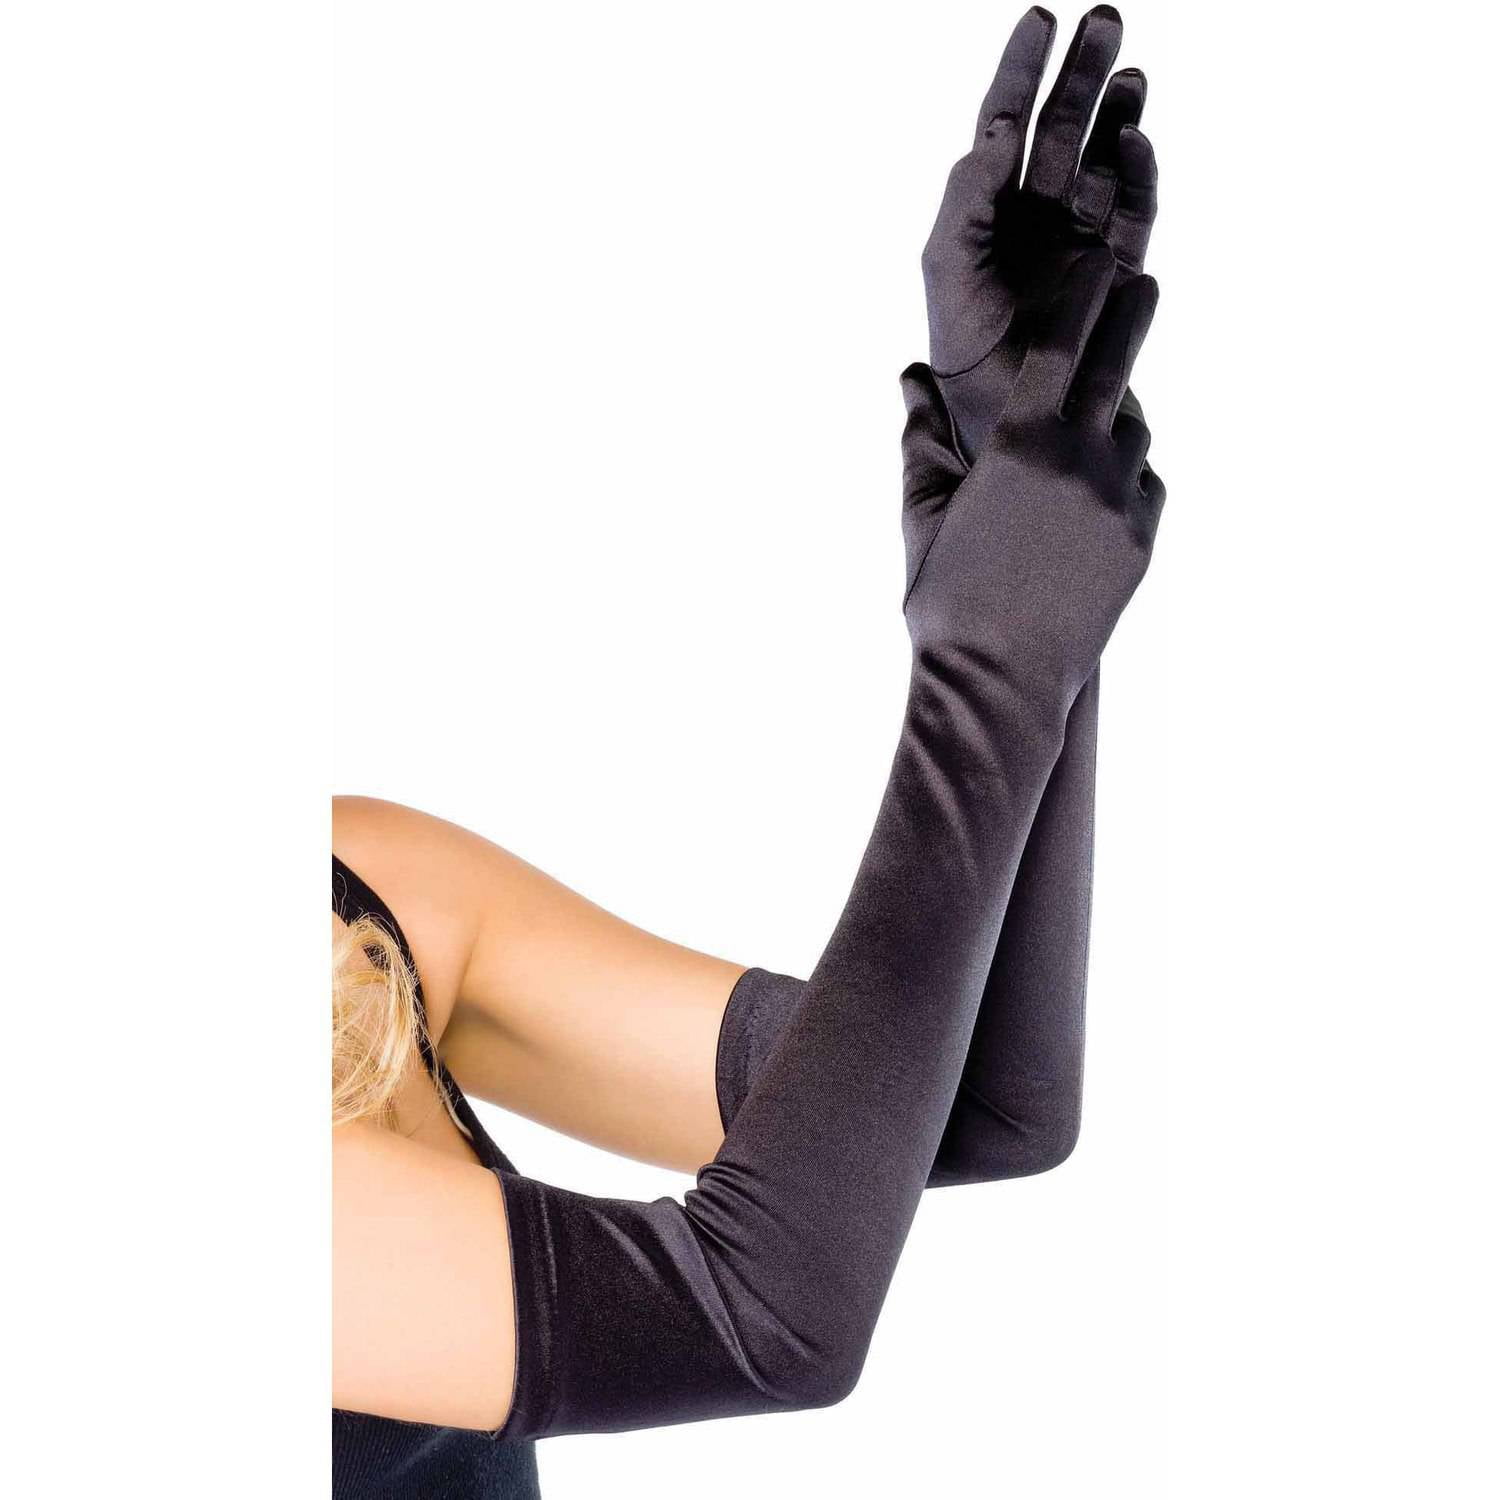 Long glove